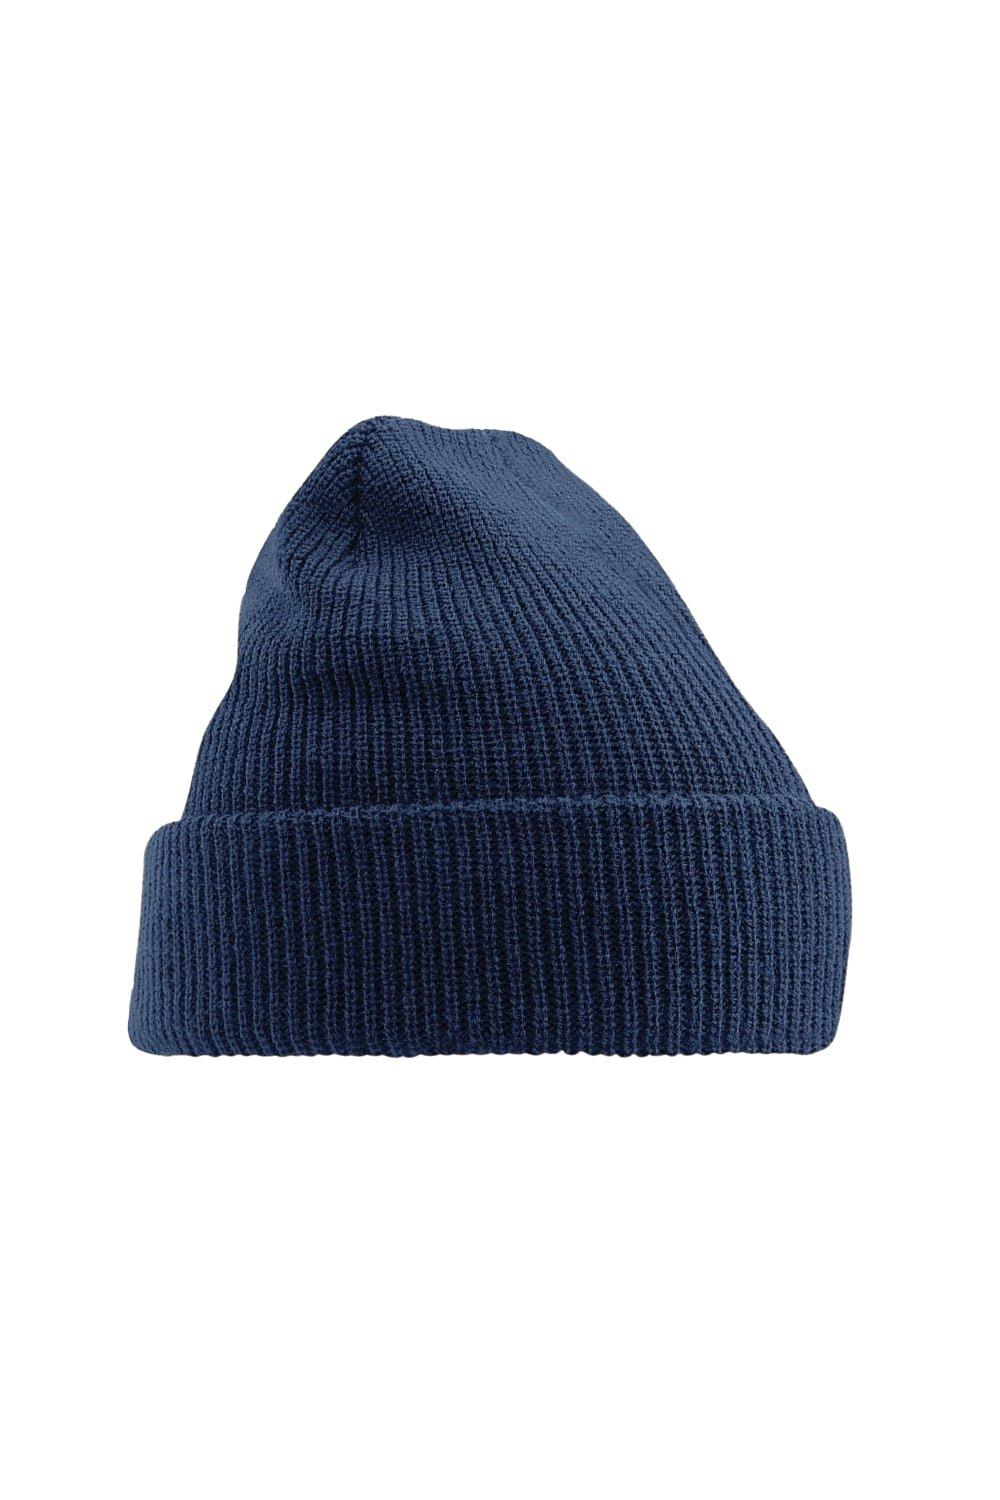 Наследная шапка Beechfield, темно-синий